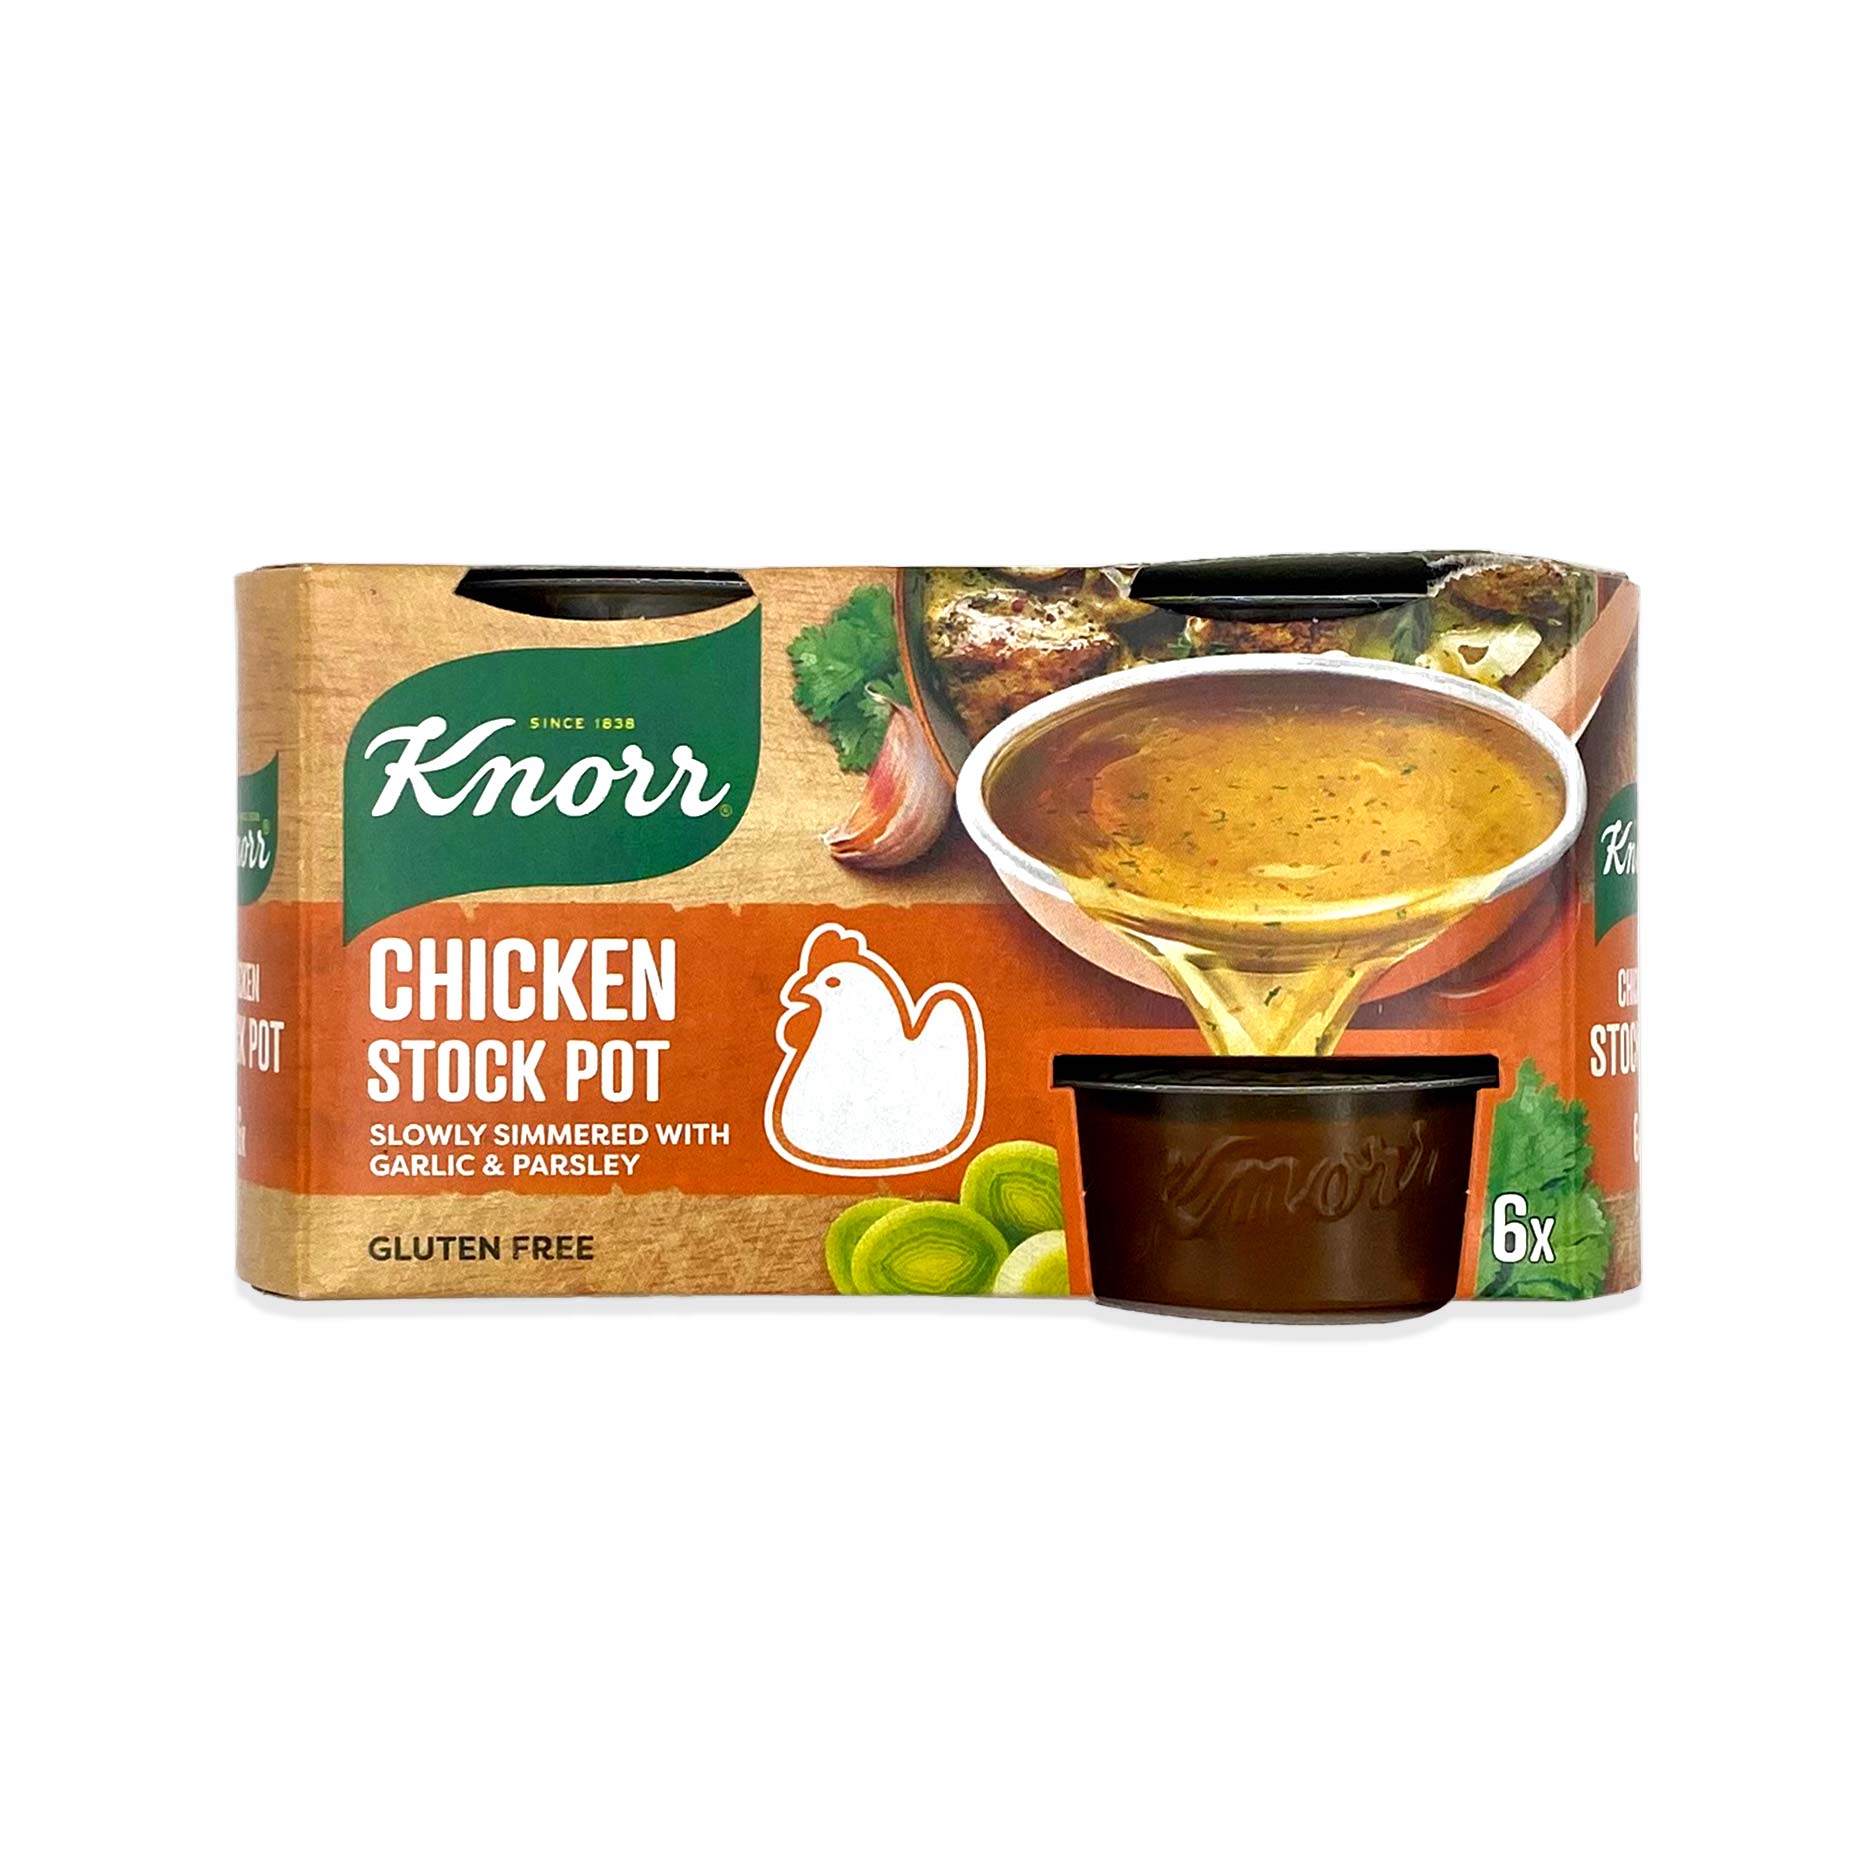 Chicken Stock Pot 168g Knorr | ALDI.IE